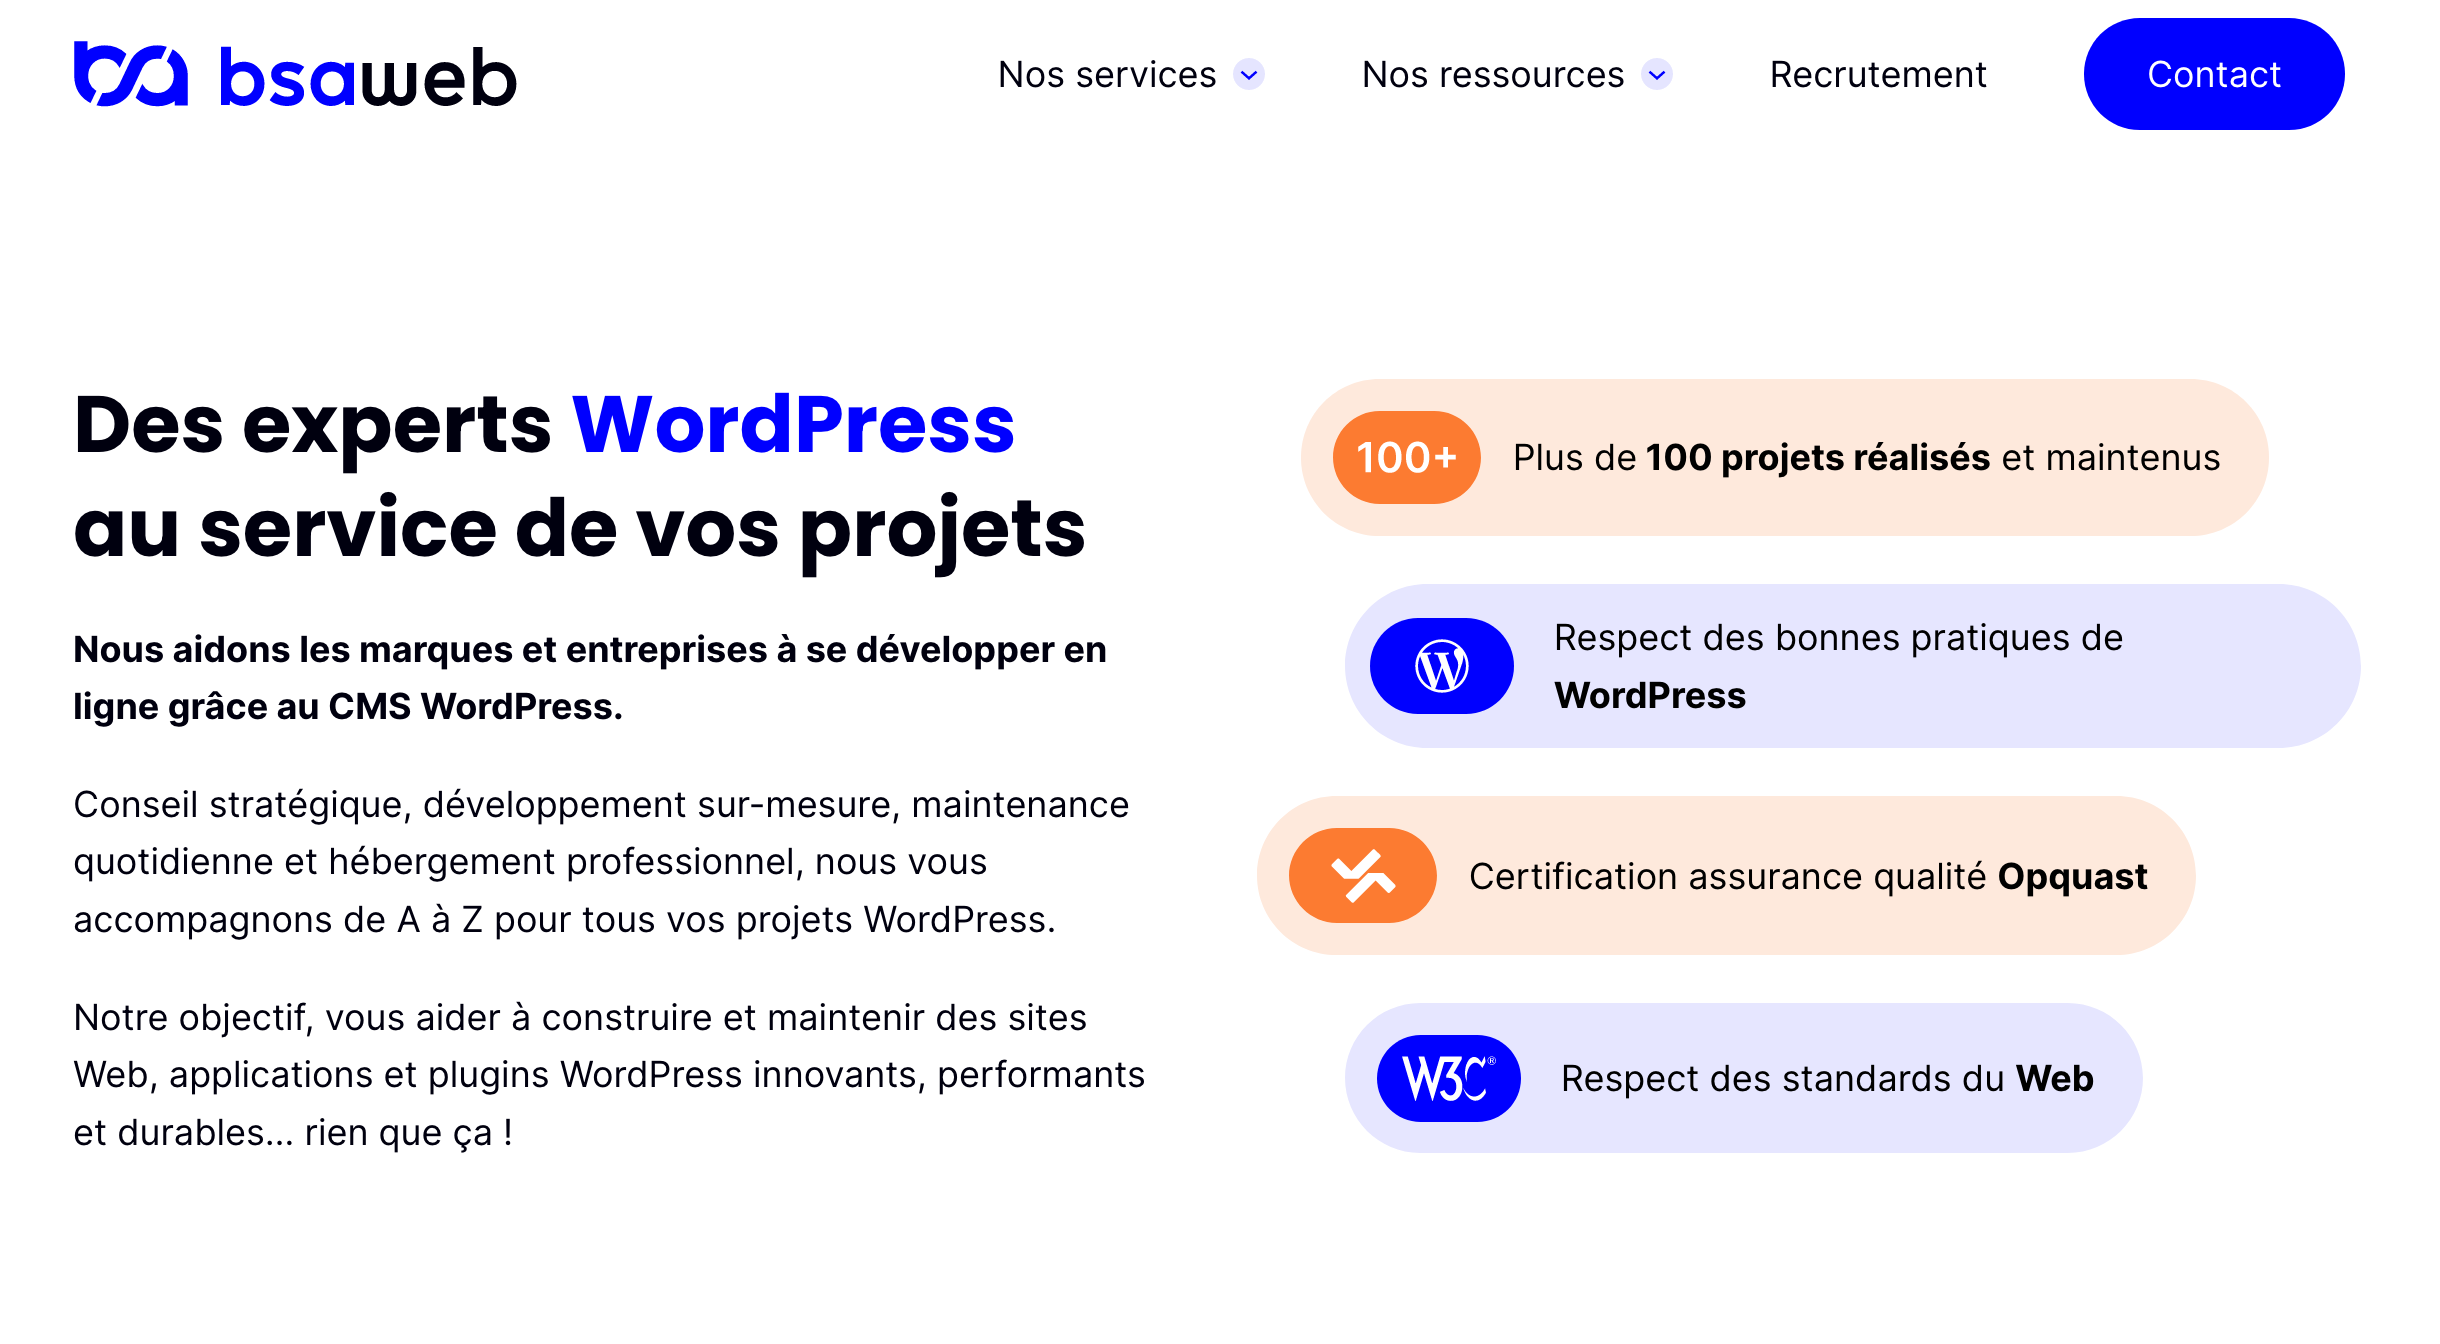 BSA Web est une agence WordPress orientée qualité.